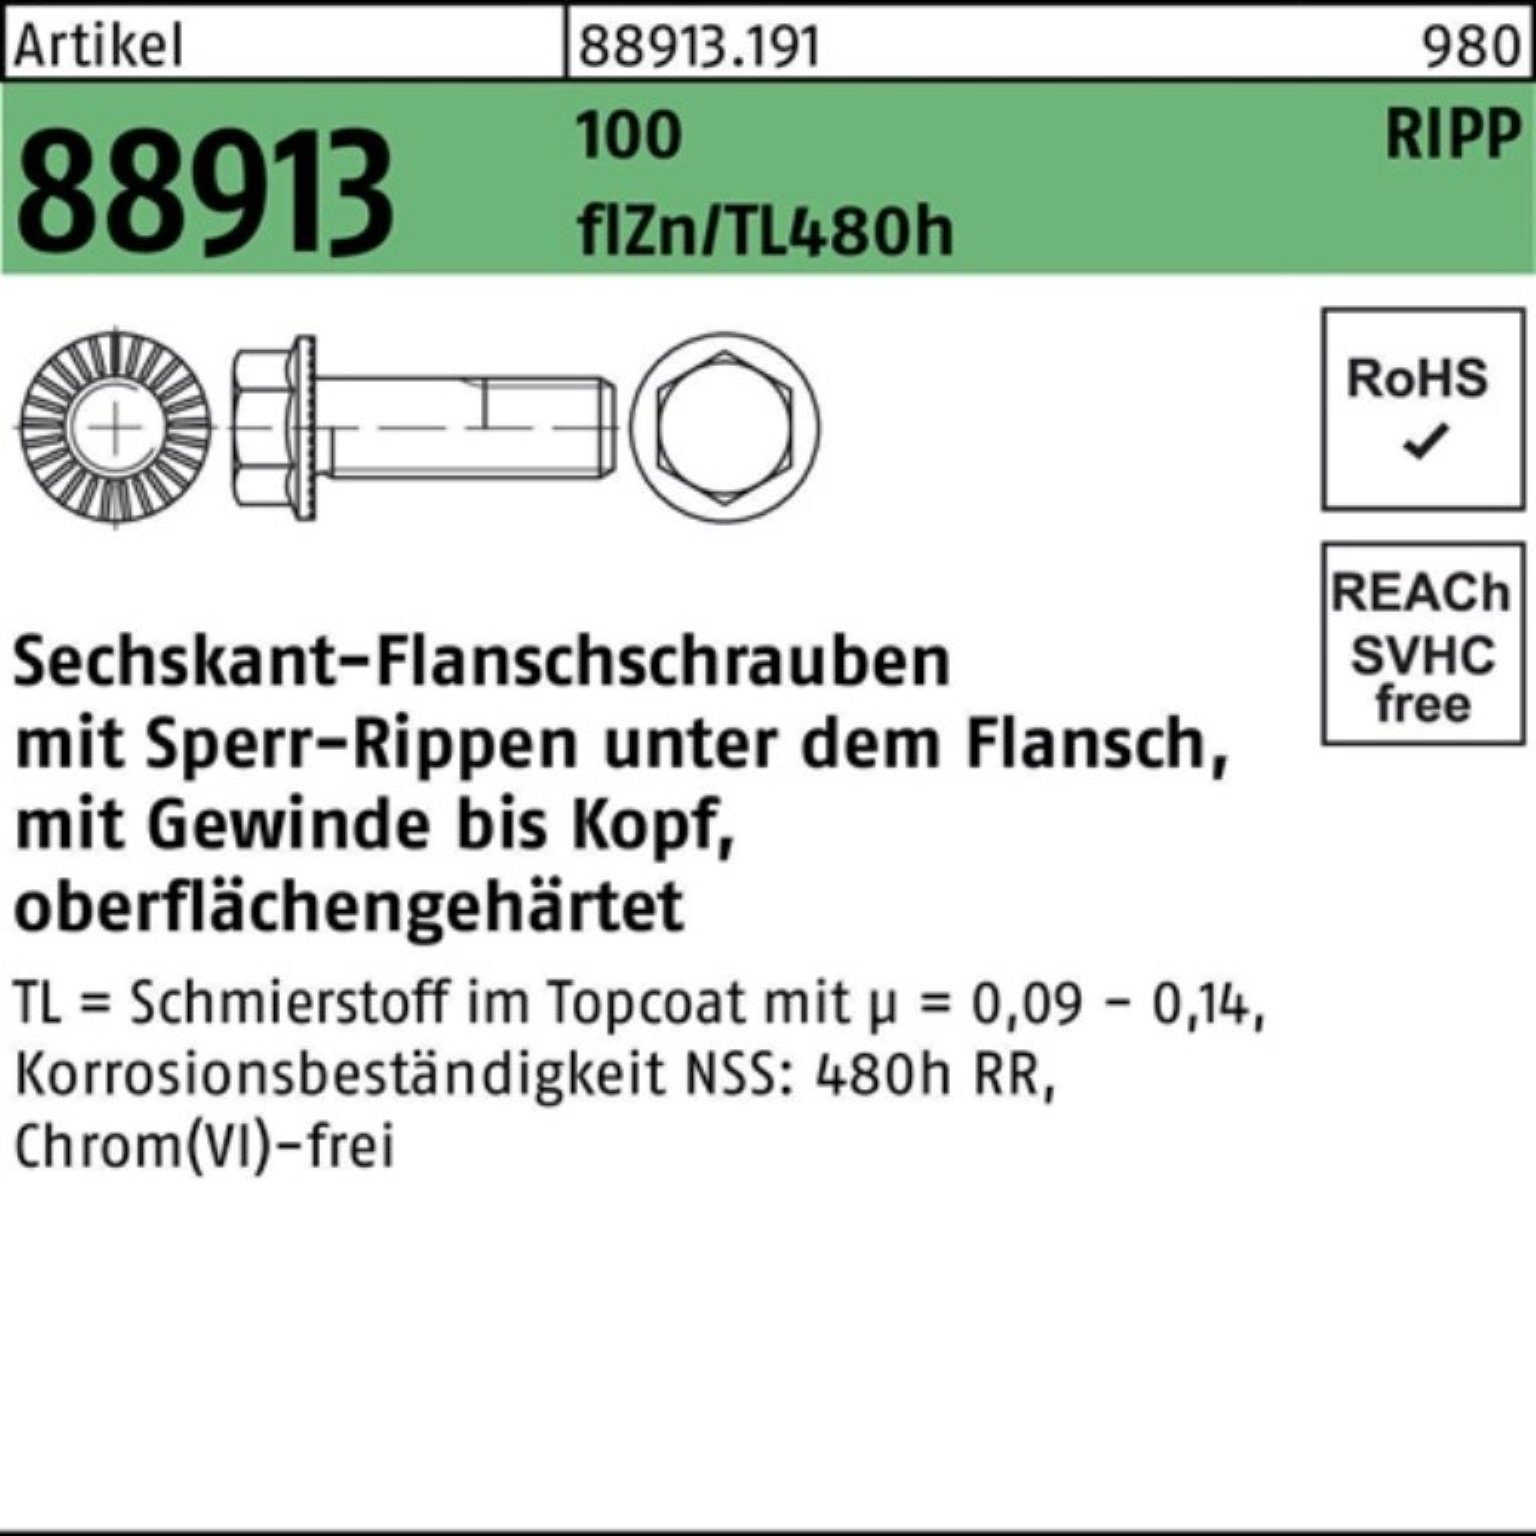 Reyher Schraube 100er Sperr-Ripp Pack M12x30 100 VG 88913 f R Sechskantflanschschraube